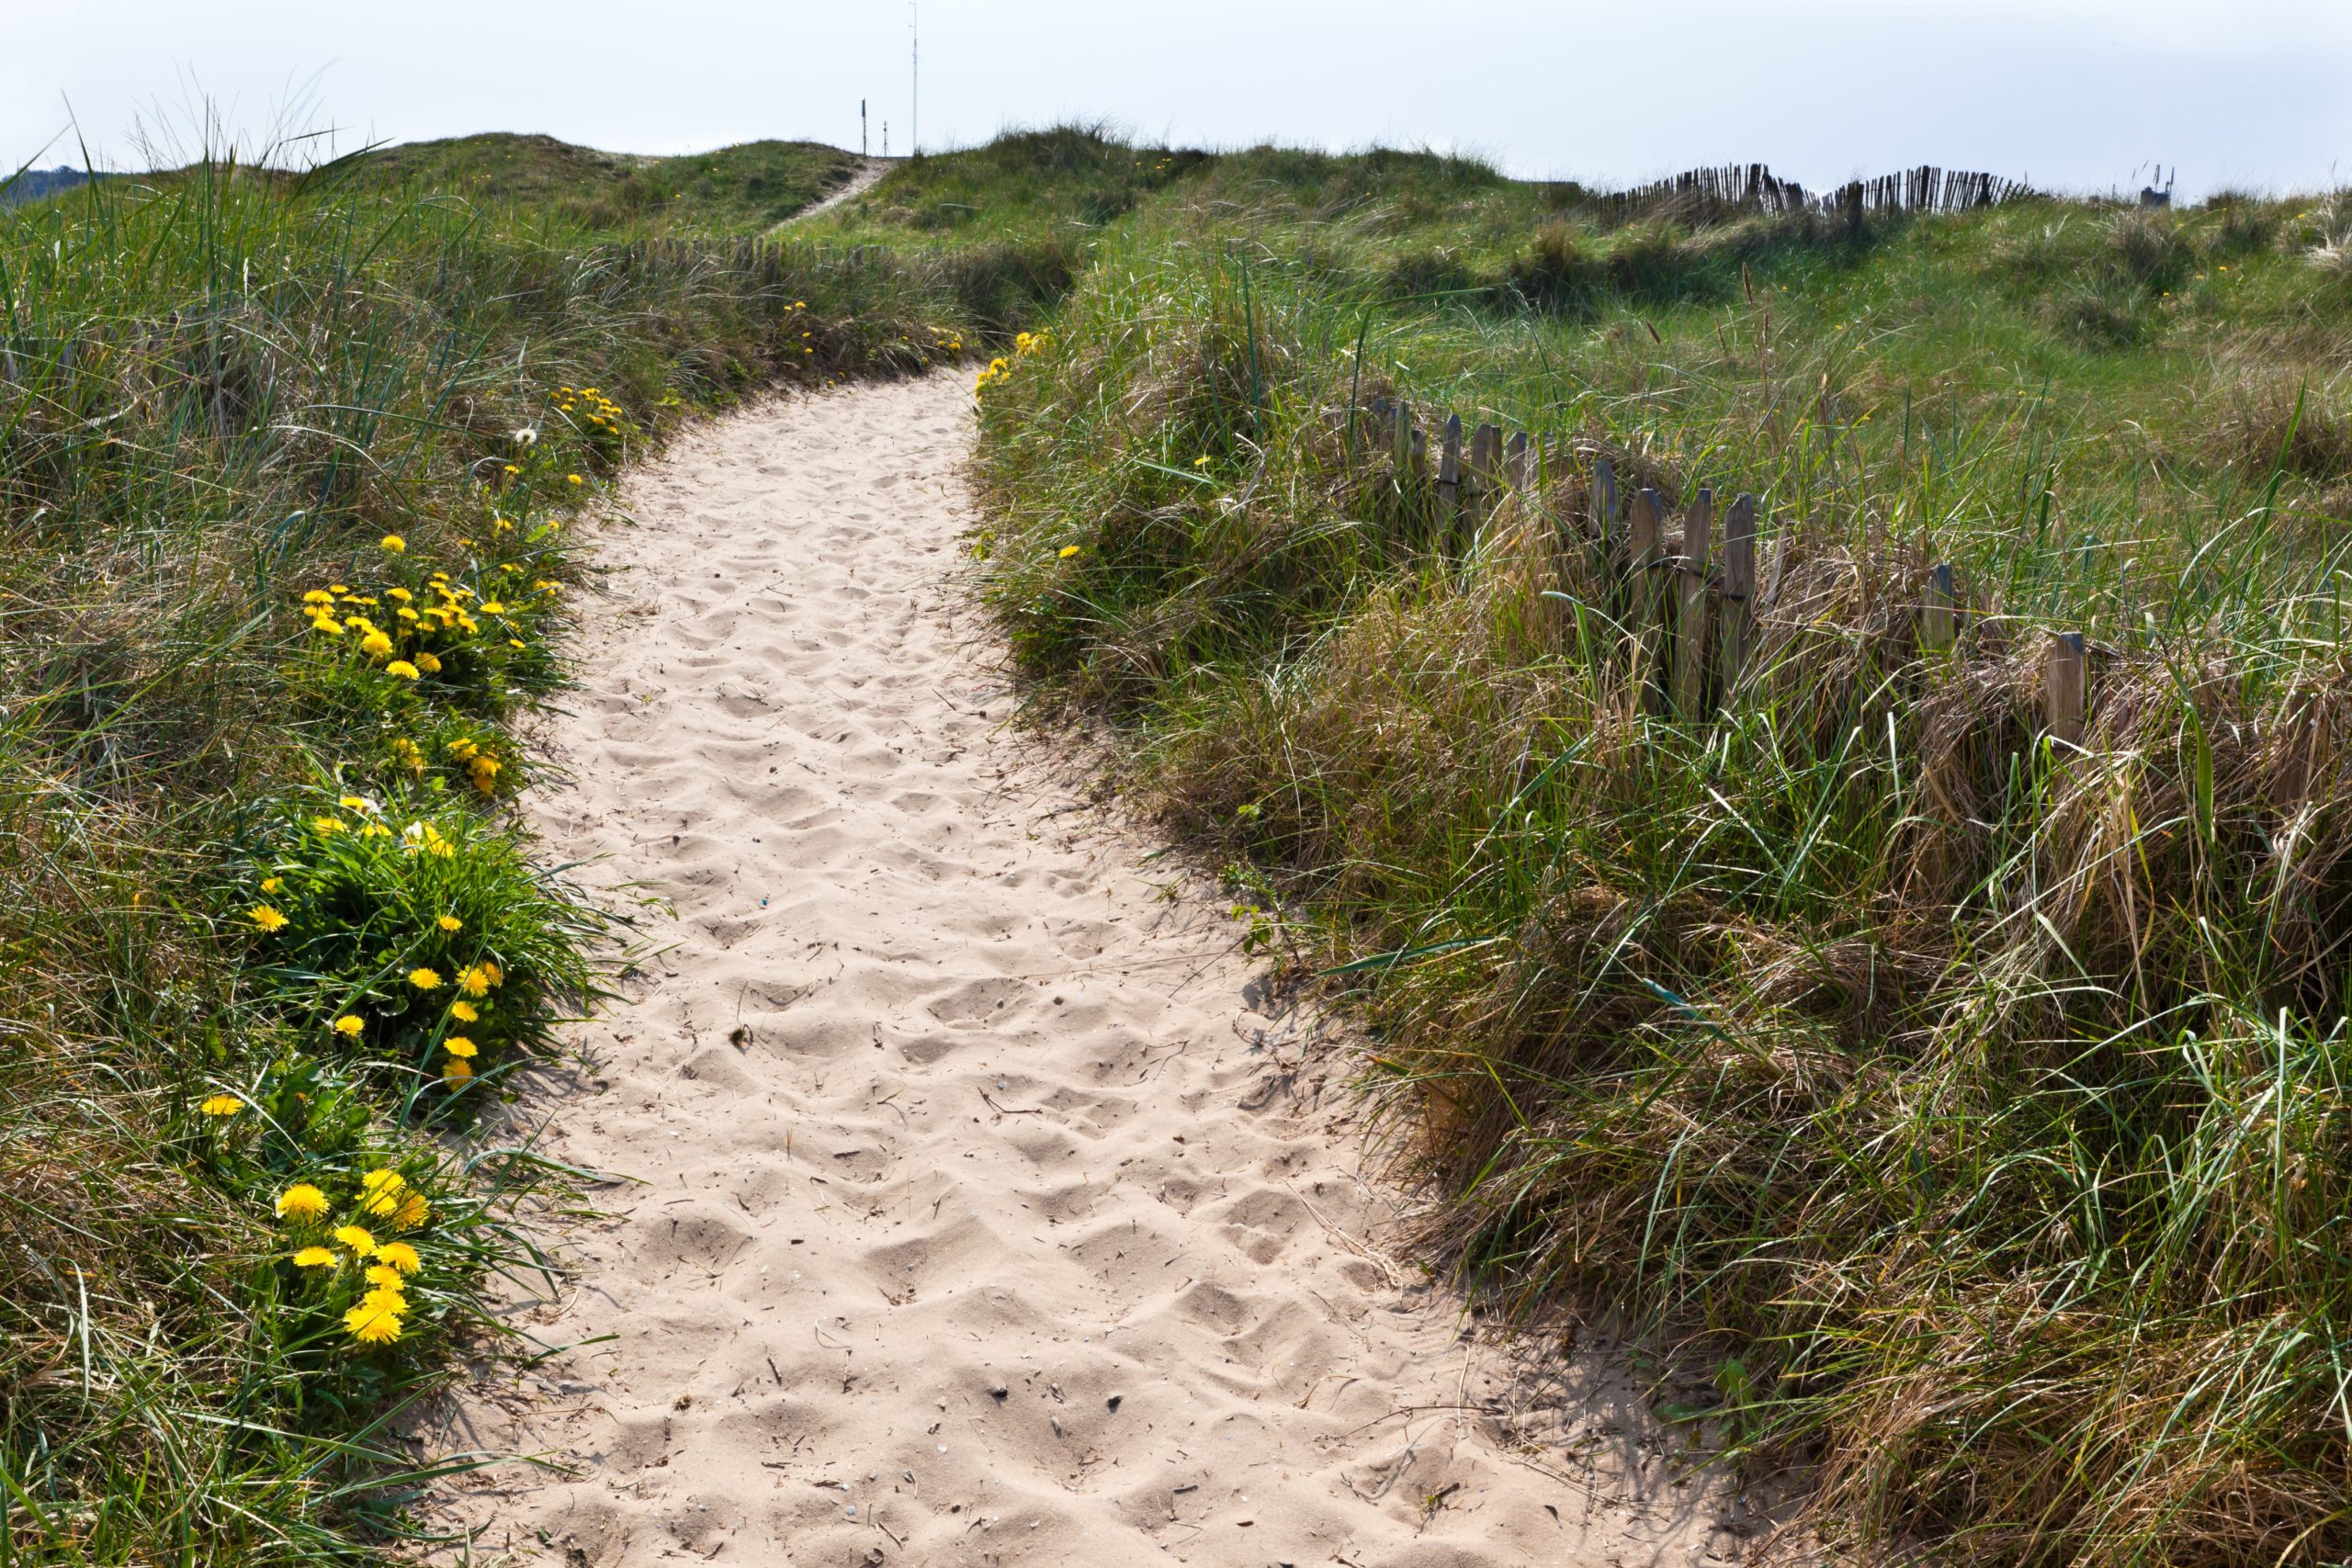 Ein Strandweg durch begrünte Dünen. Dein Laufweg.